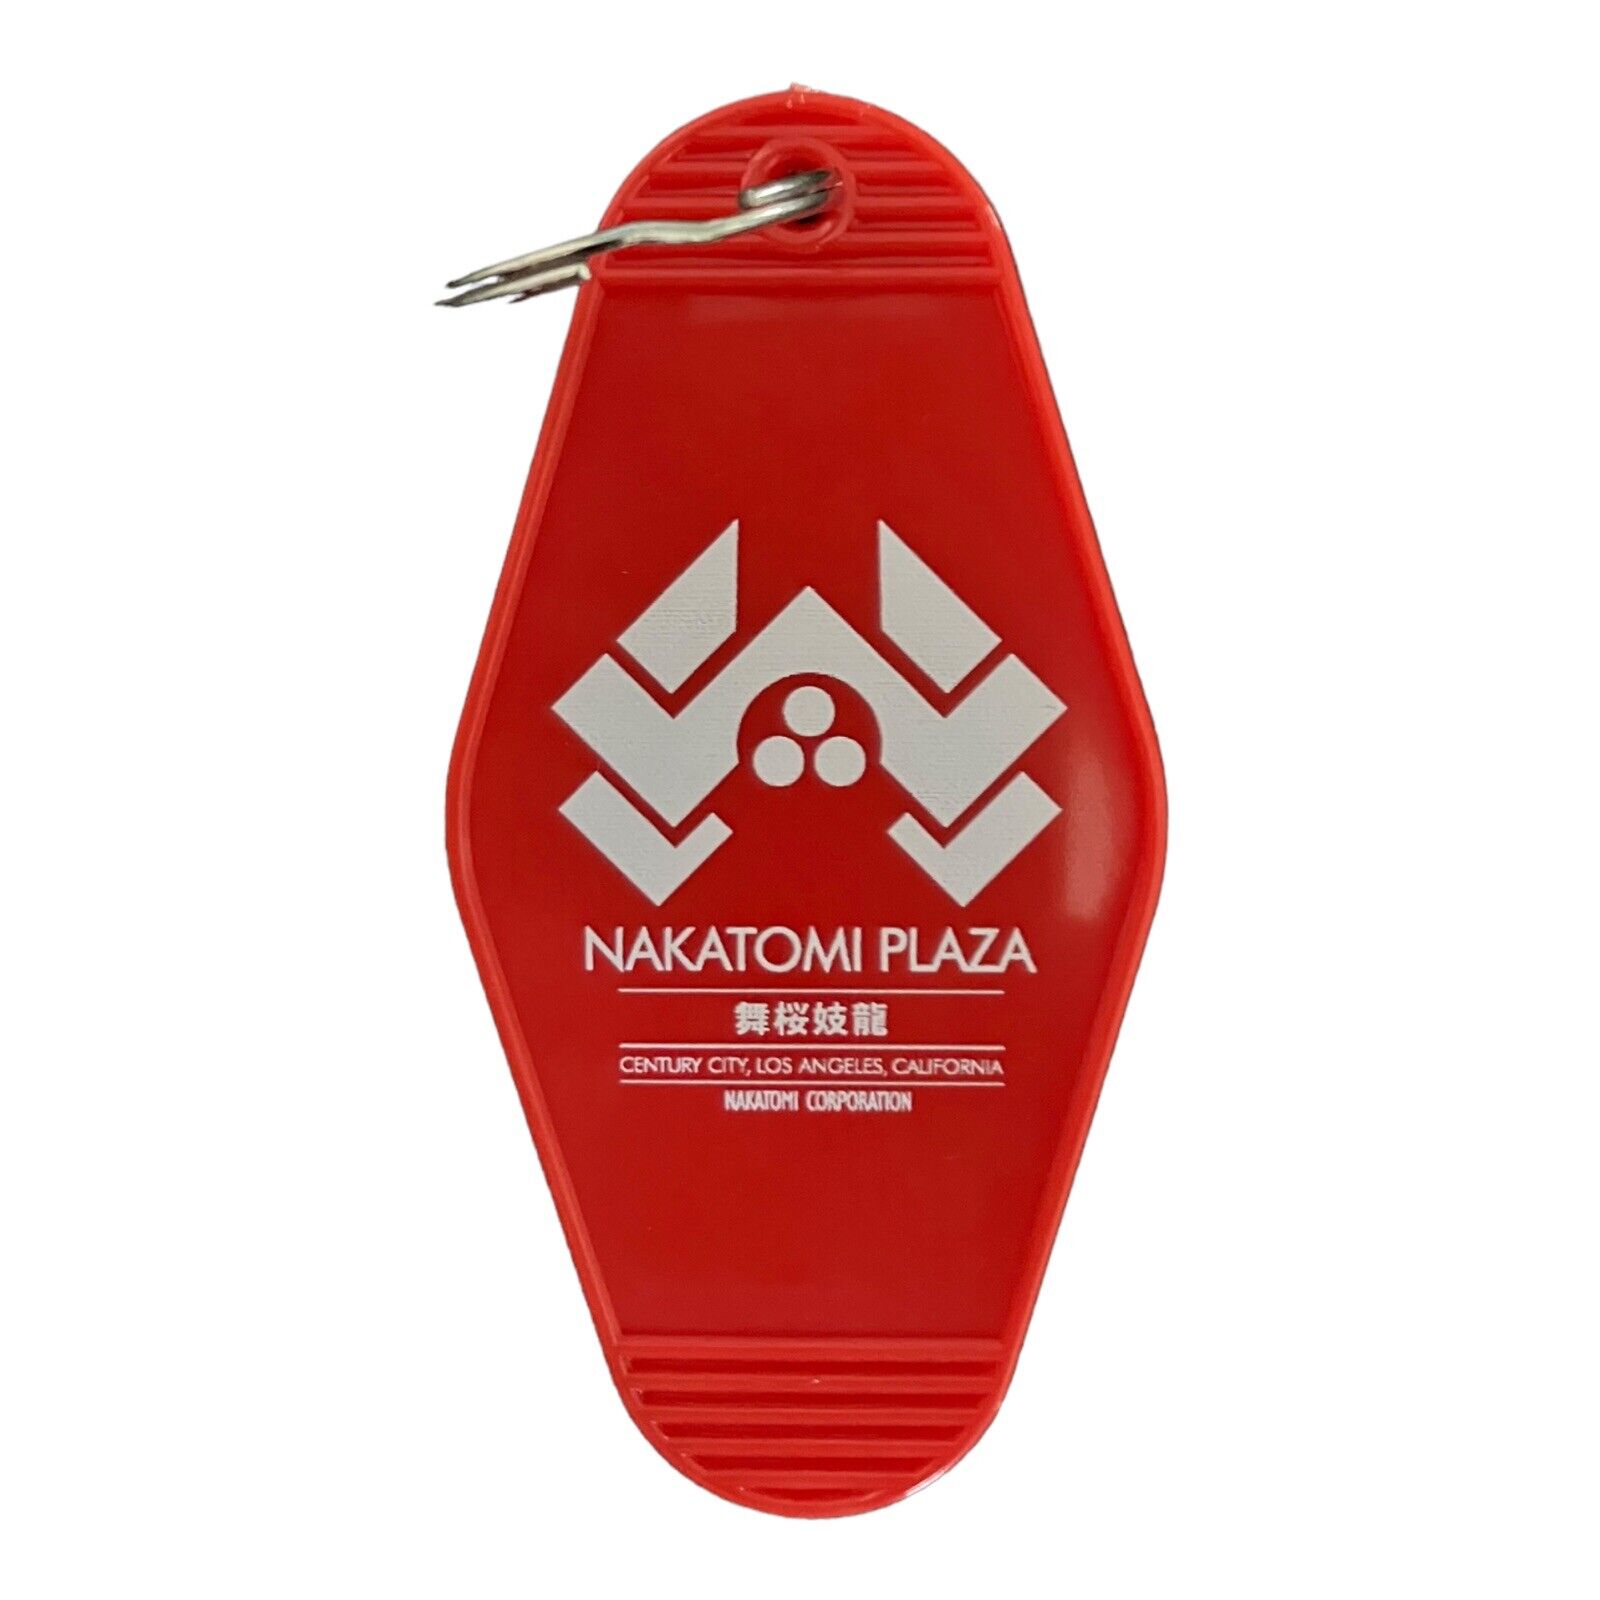 DIE HARD Nakatomi Plaza inspired keytag